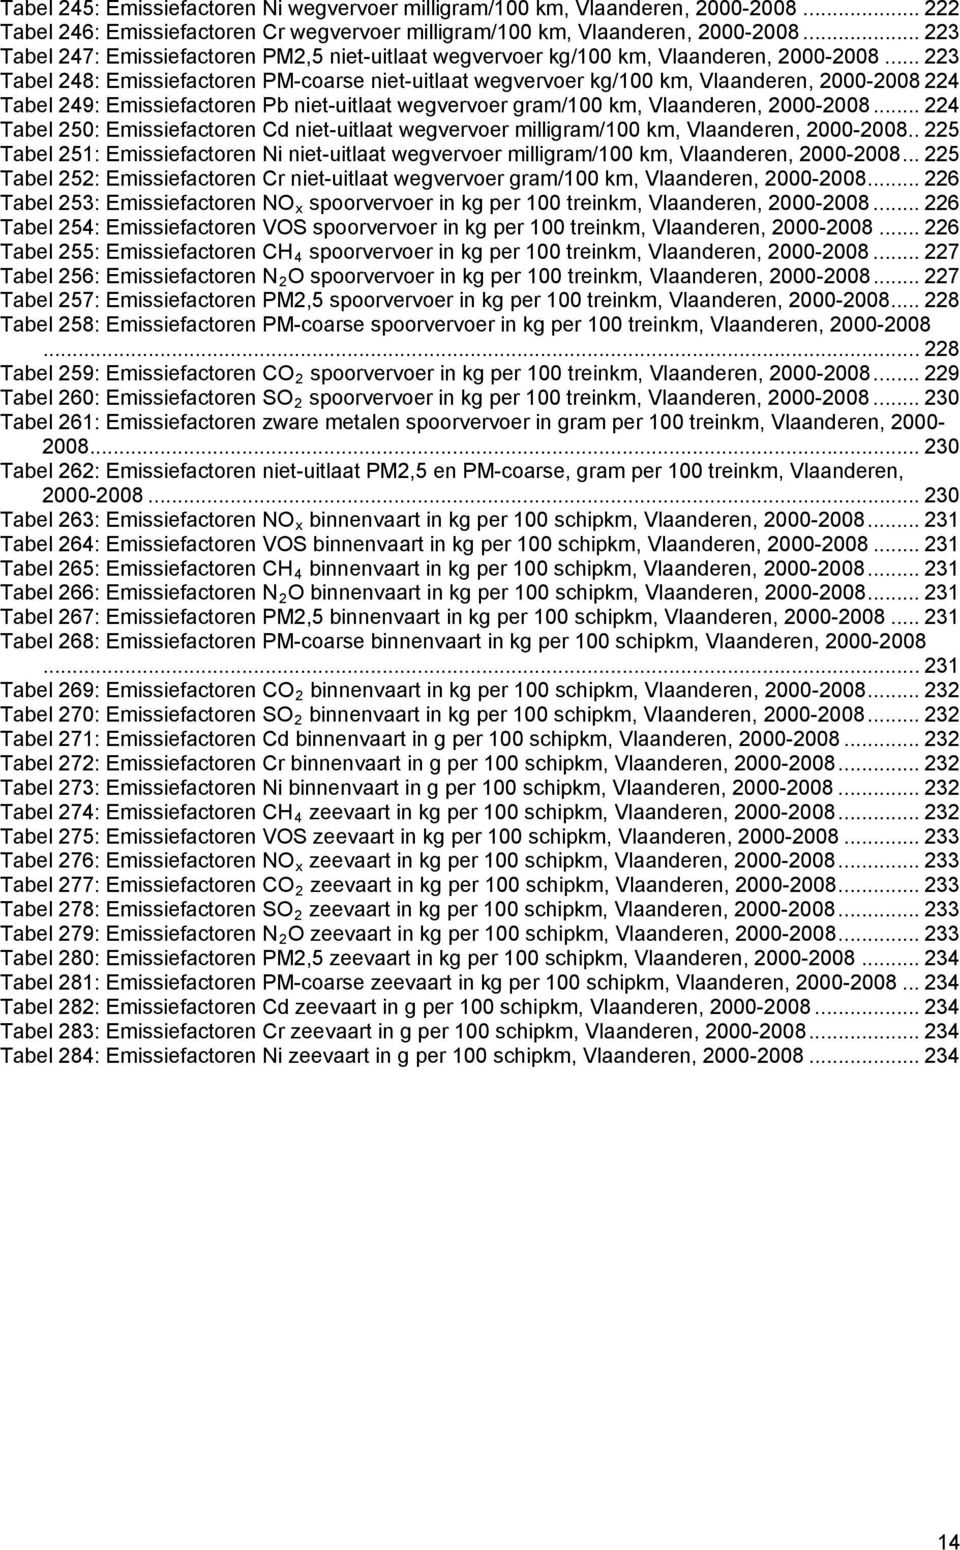 .. 223 Tabel 248: Emissiefactoren PM-coarse niet-uitlaat wegvervoer kg/100 km, Vlaanderen, 2000-2008 224 Tabel 249: Emissiefactoren Pb niet-uitlaat wegvervoer gram/100 km, Vlaanderen, 2000-2008.